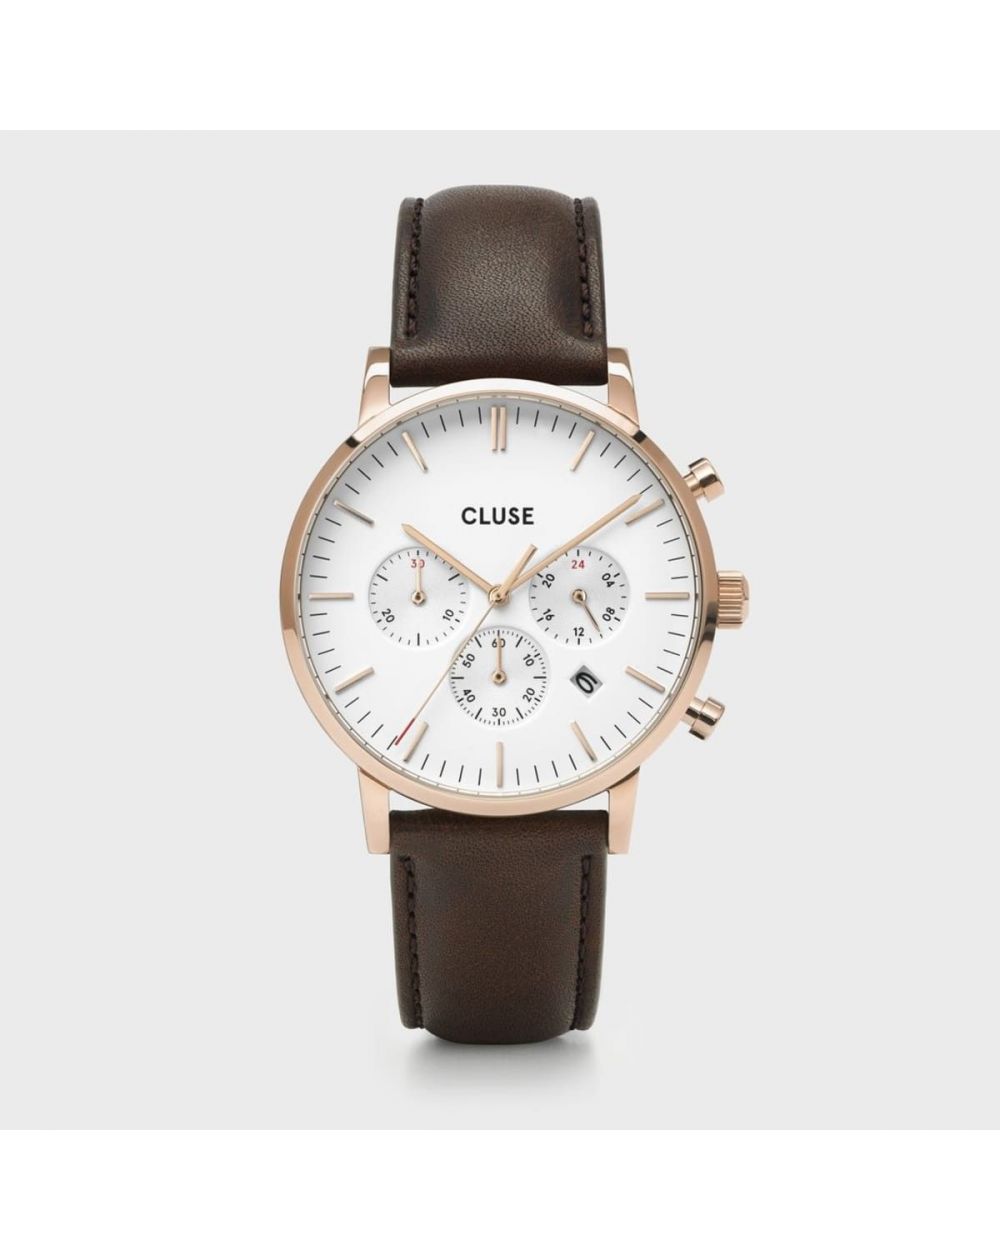 CLUSE horloge - Triomphe Steel White Pearl, zilverkleurig